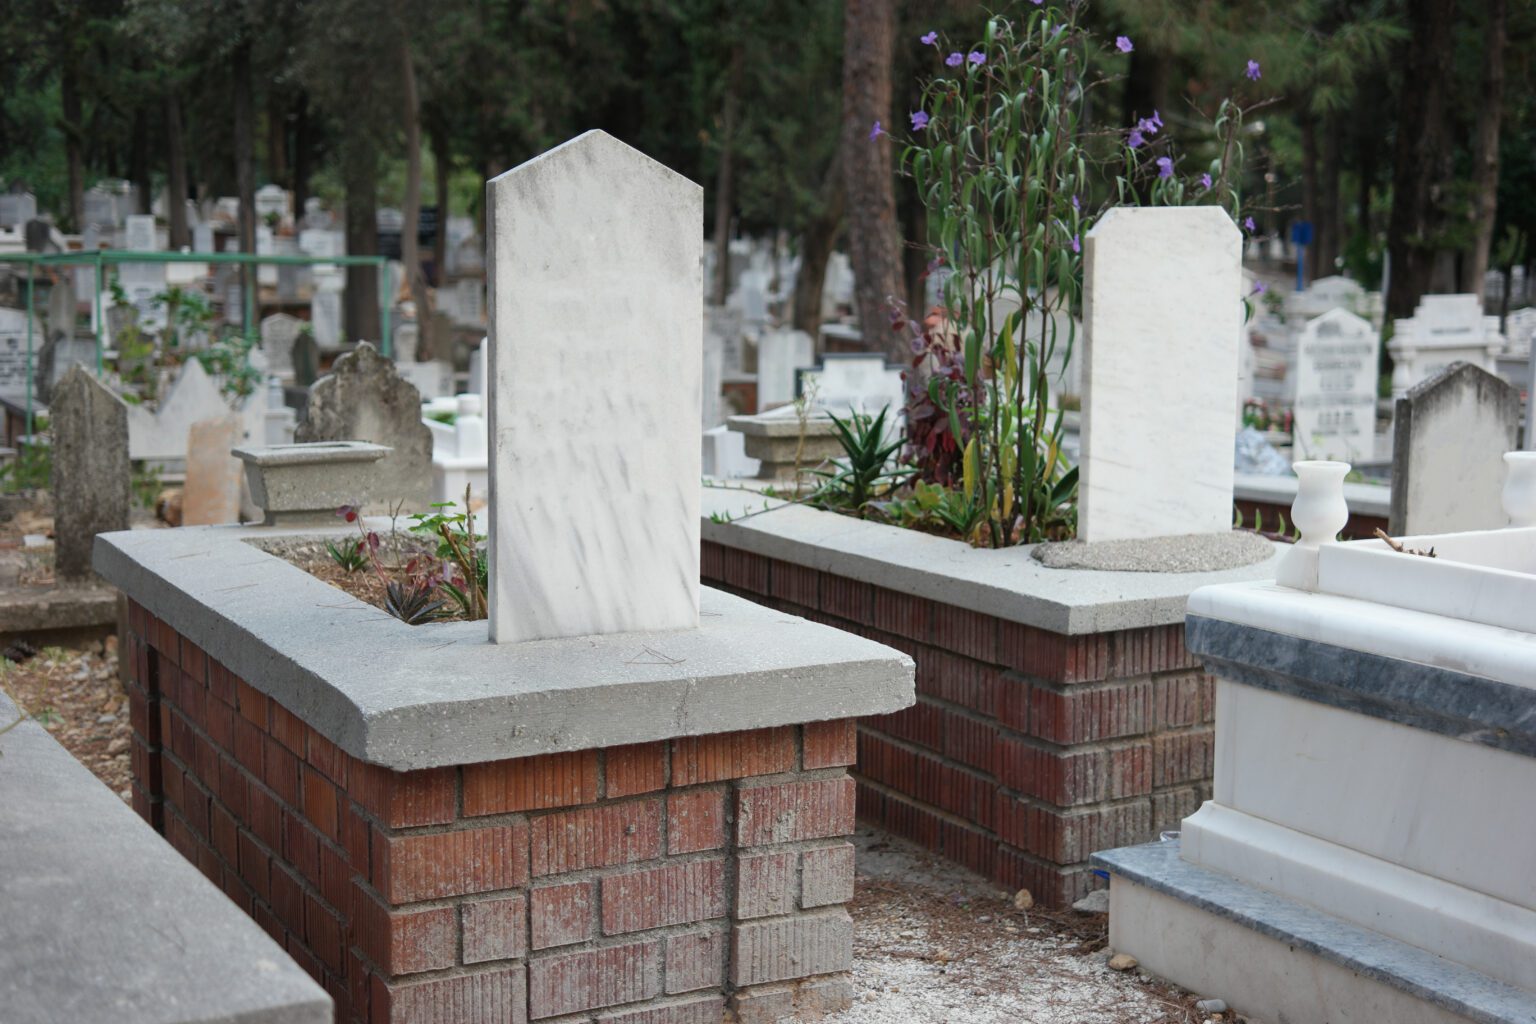 Muslim graveyard background. Tombstones and graves in Muslim cemetery, Turkey.